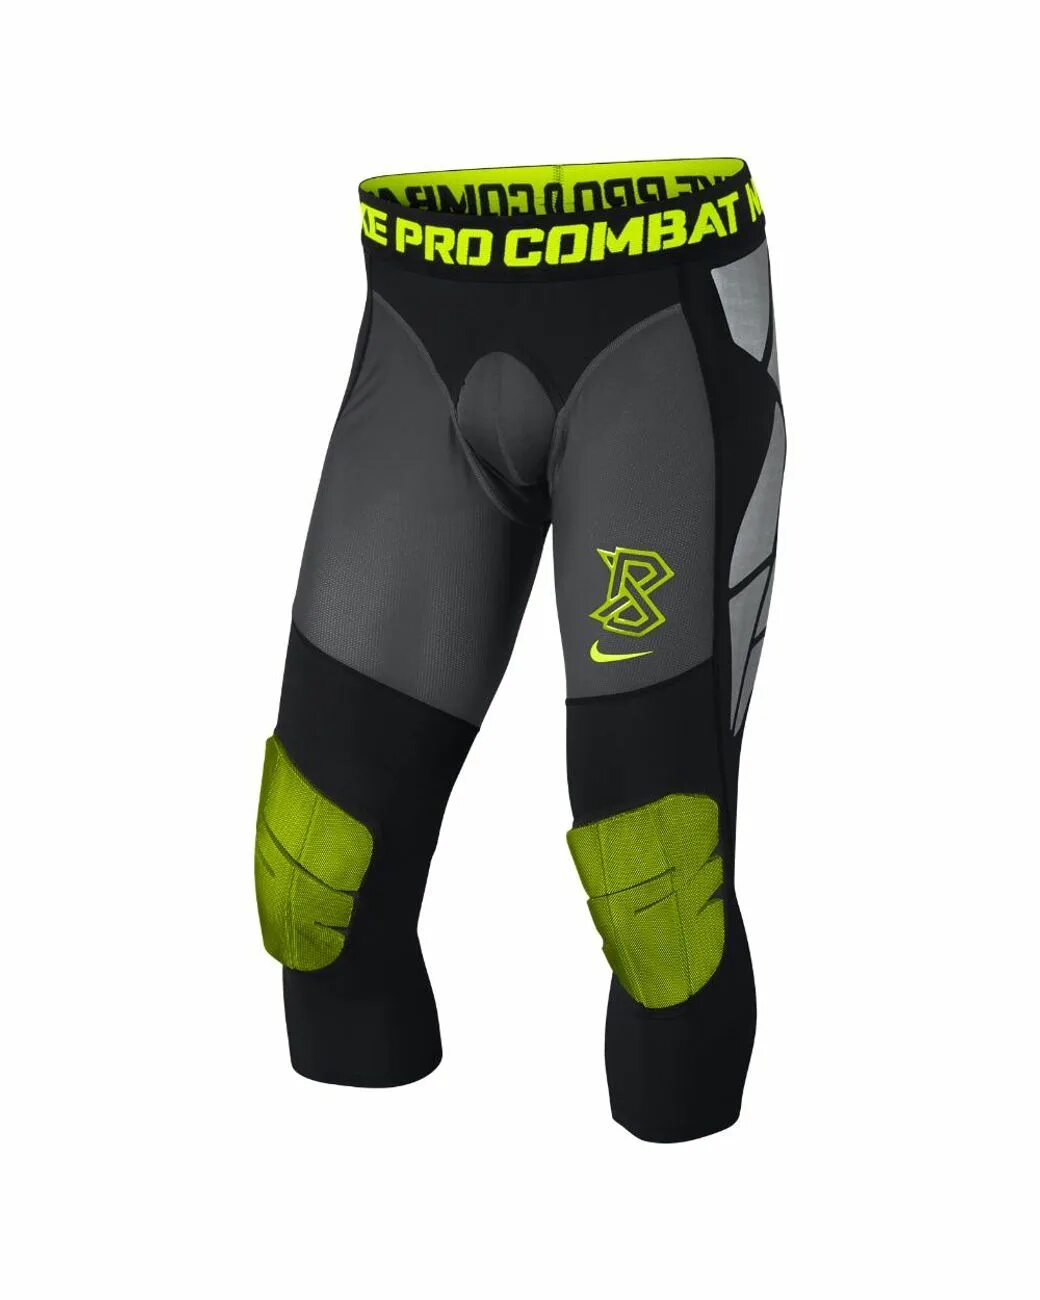 Тайтсы Nike Pro Combat. Nike Pro Combat штаны. Nike Pro Combat с защитой. Nike Pro Combat 504948-011. Nike pro combat